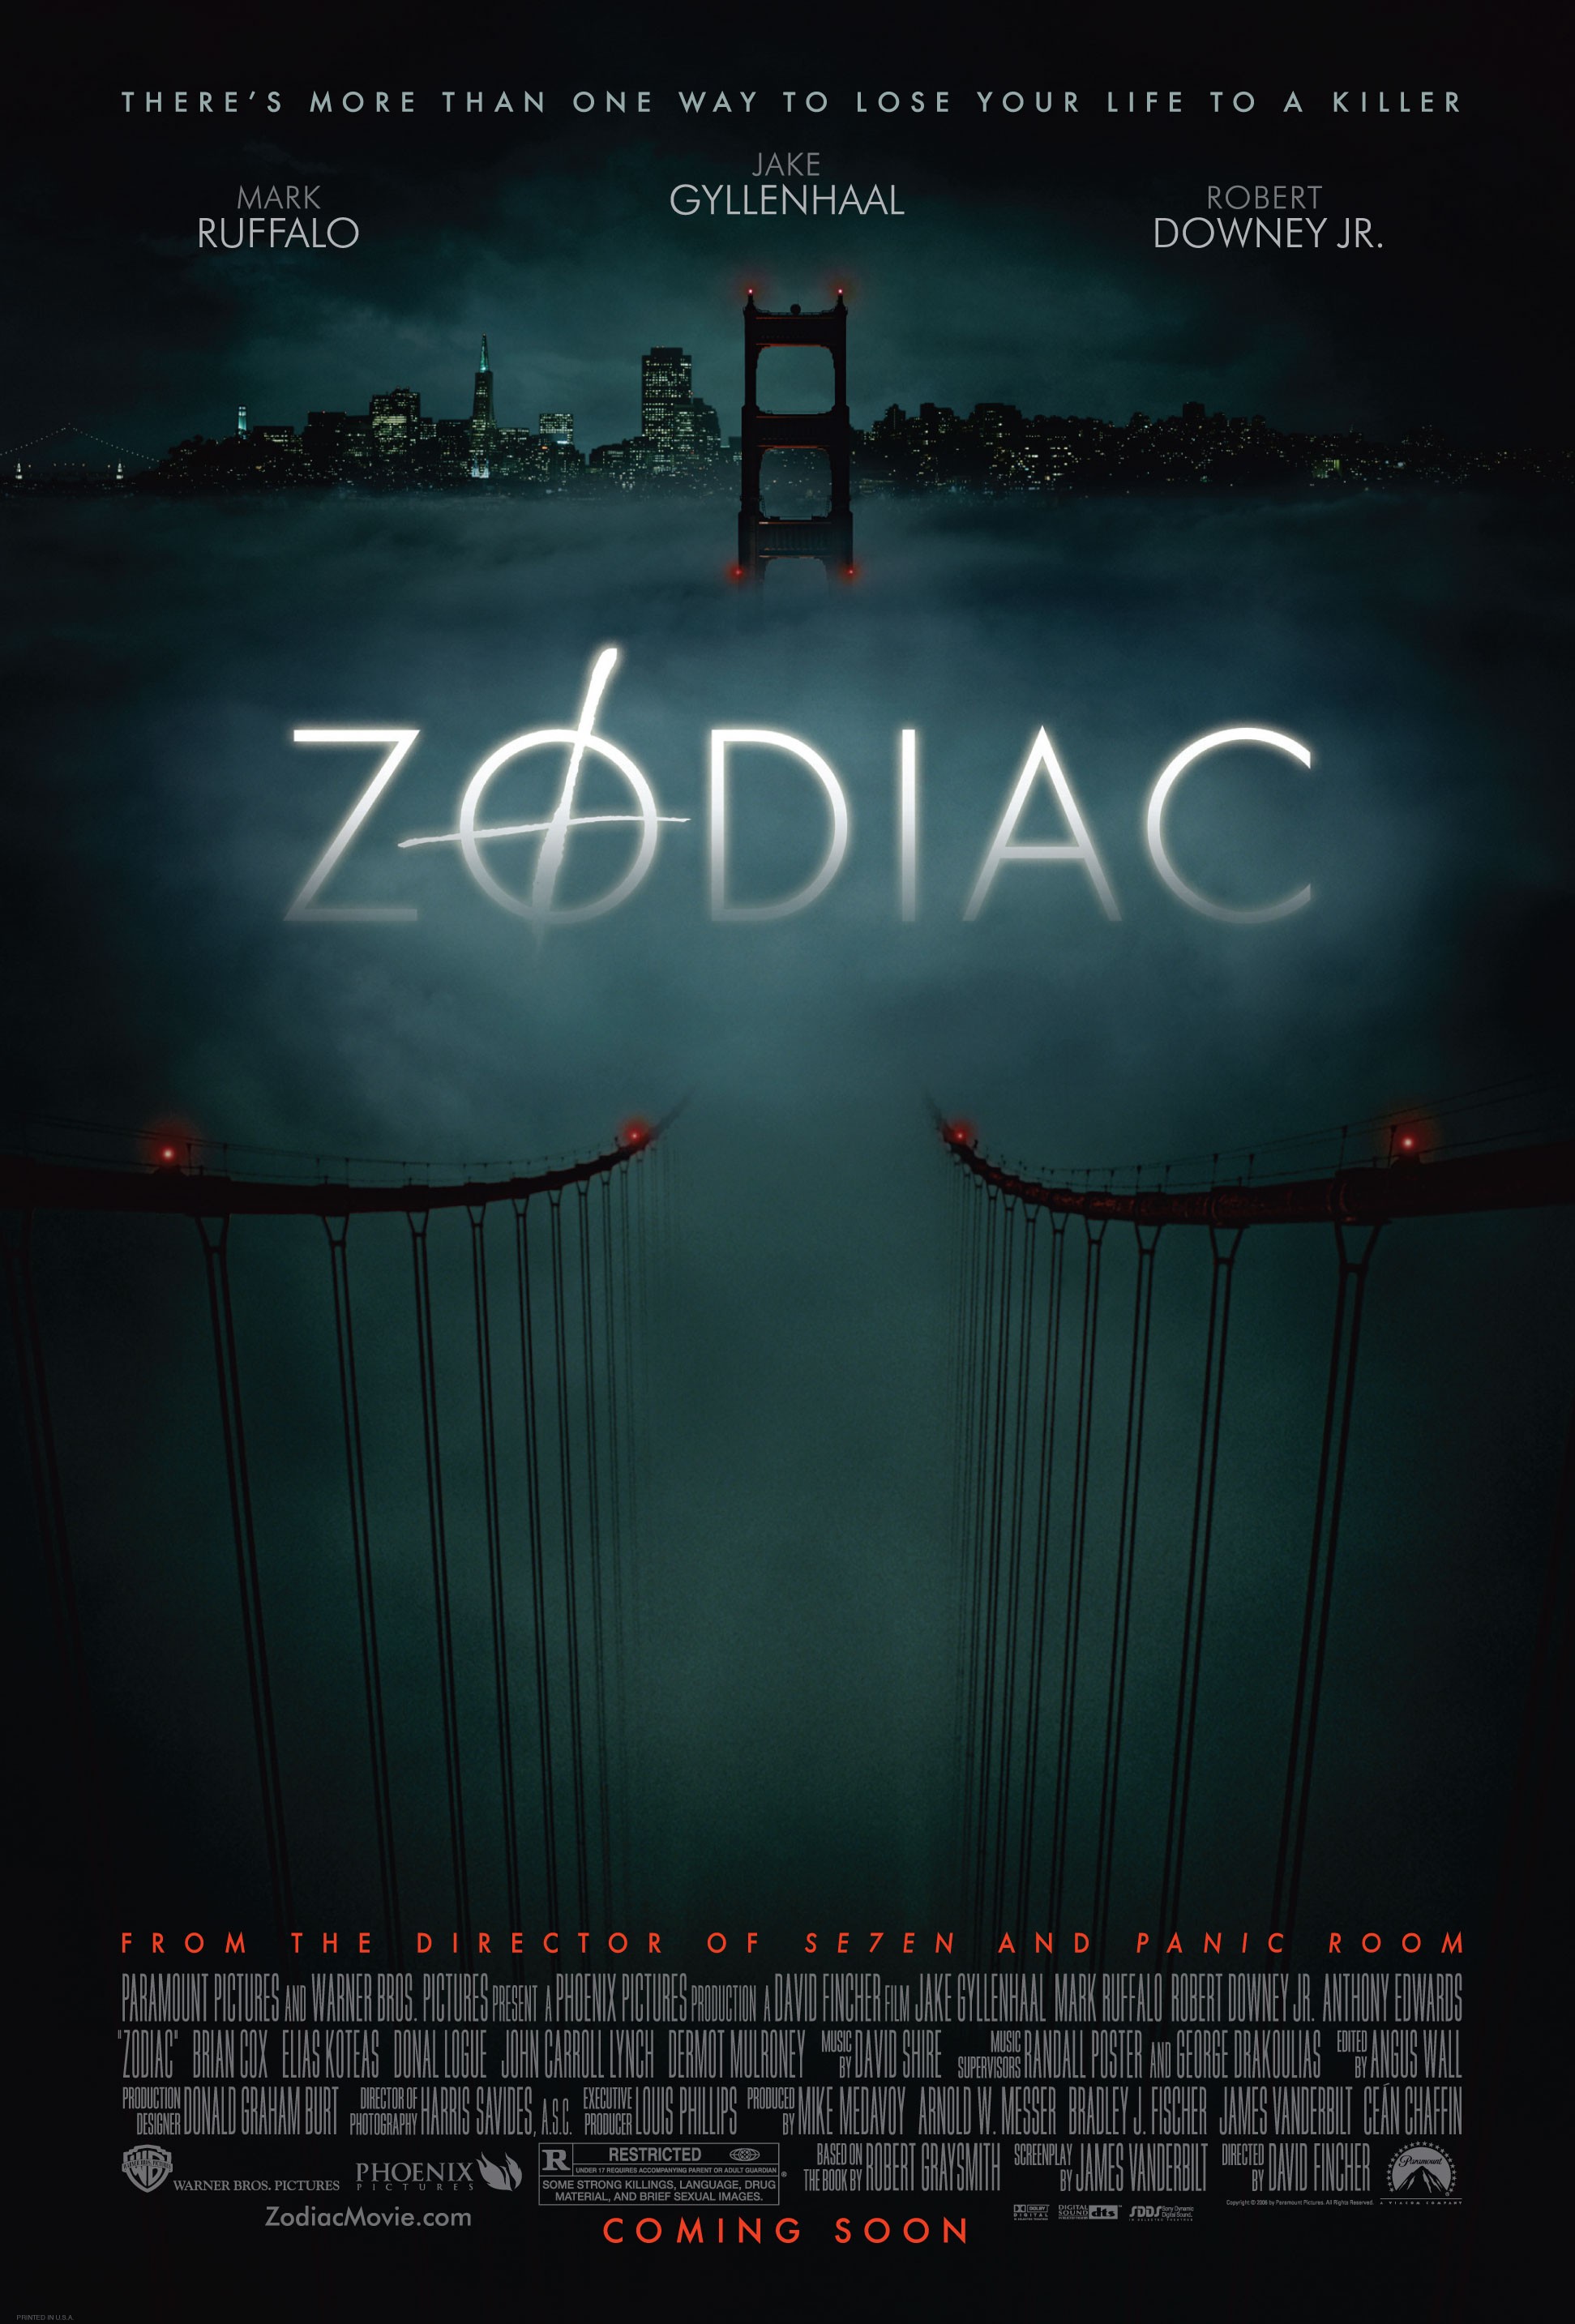 13- Zodiac (David Fincher, 2007)